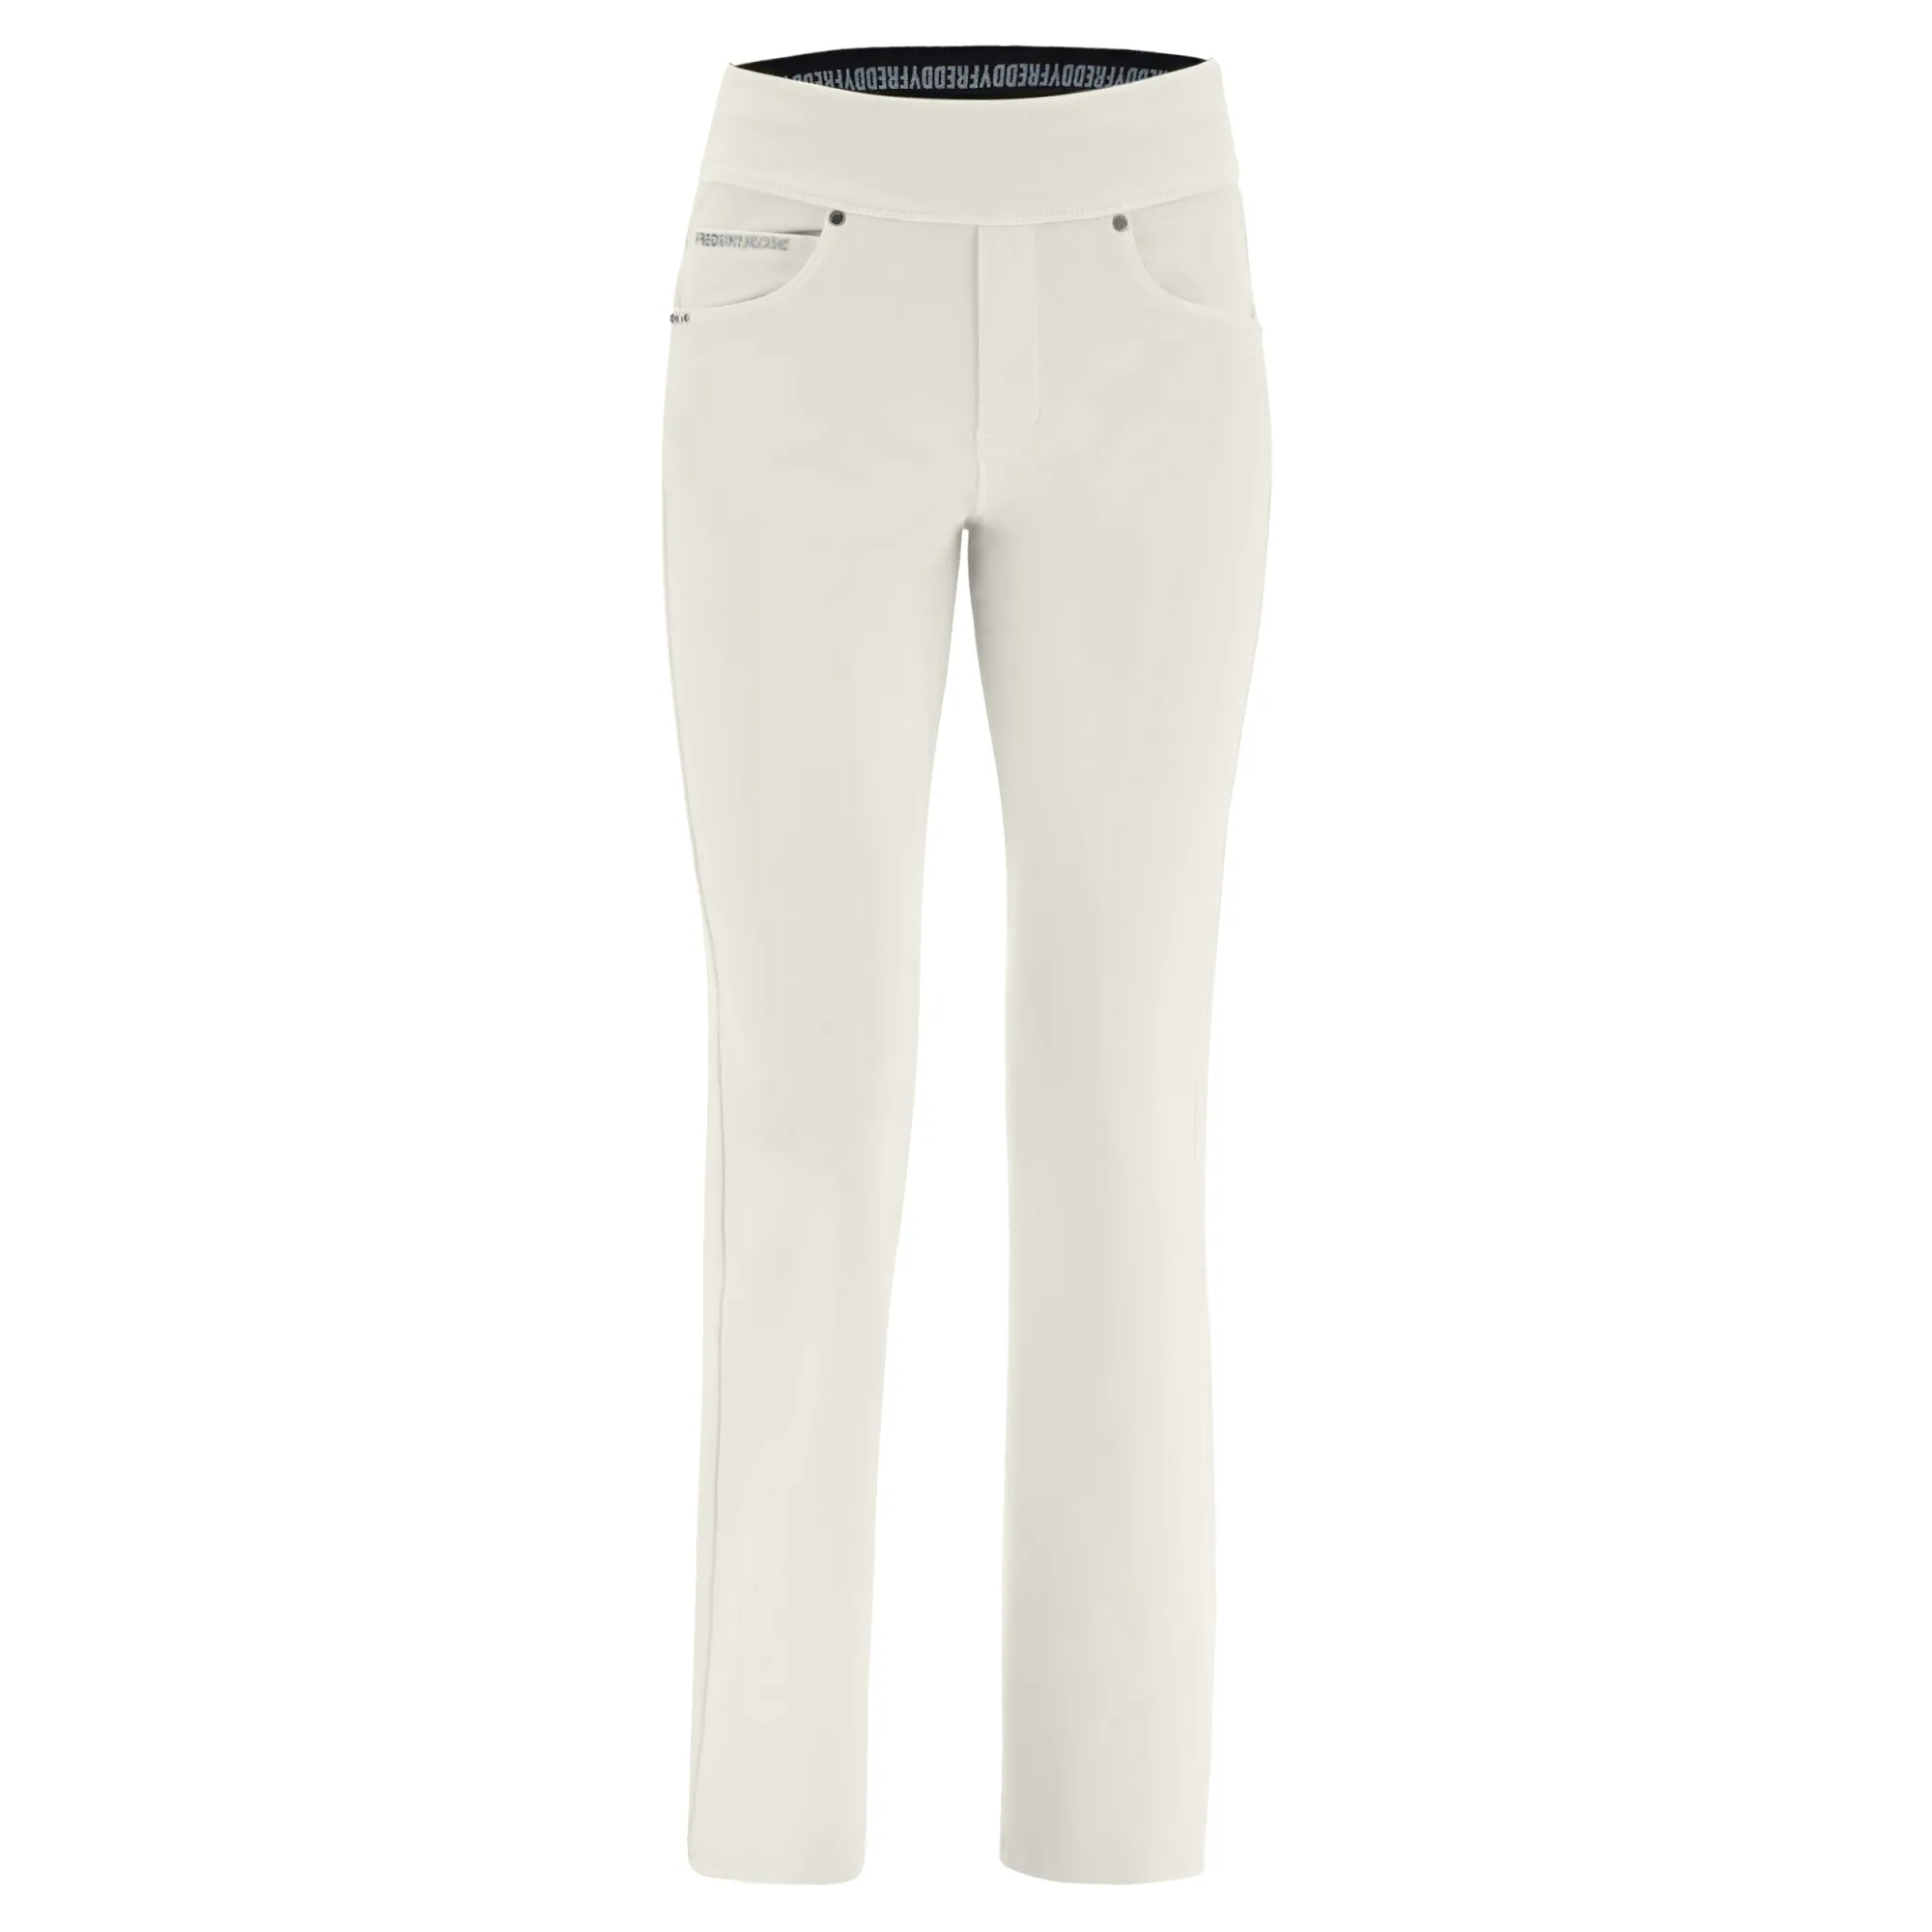 Freddy N.O.W.® Yoga Damen Comfort Hose - Mid Waist Straight - umschlagbarer Taillenbund - Garment Dyed - Creme - W103